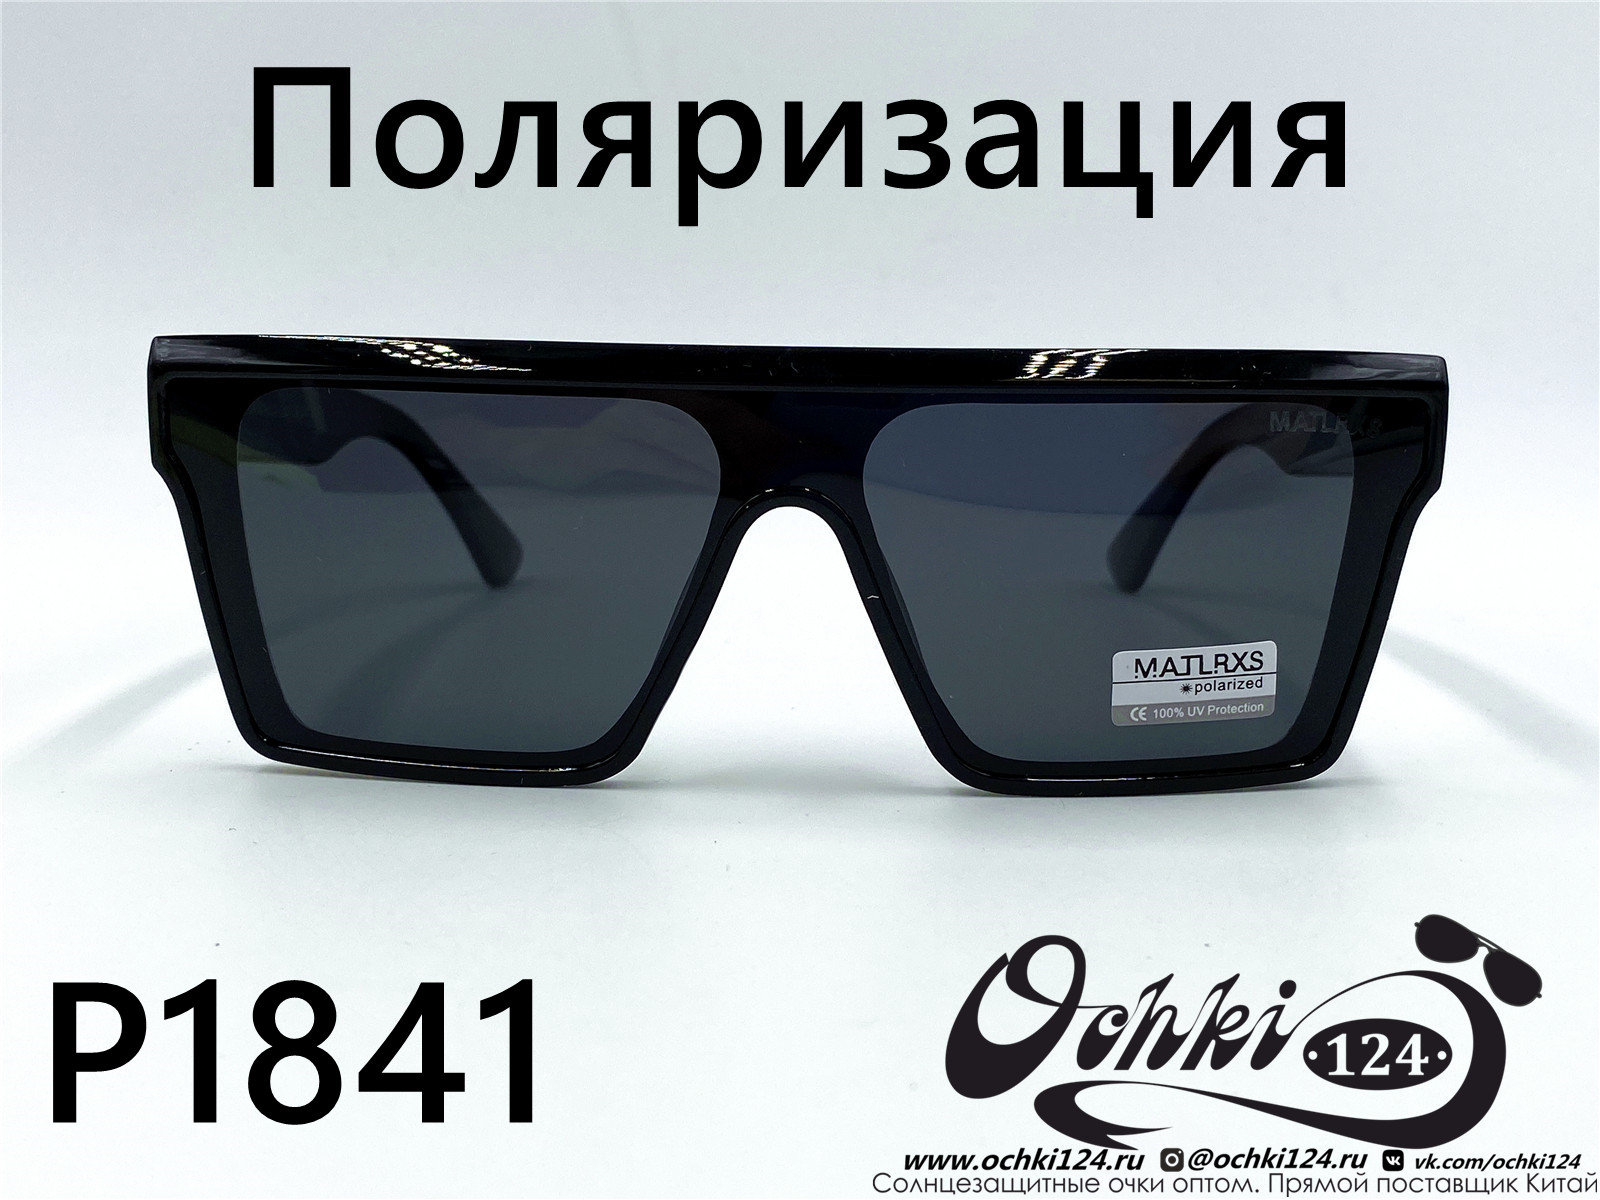  Солнцезащитные очки картинка 2022 Мужские Поляризованные Квадратные Matlrxs P1841-1 